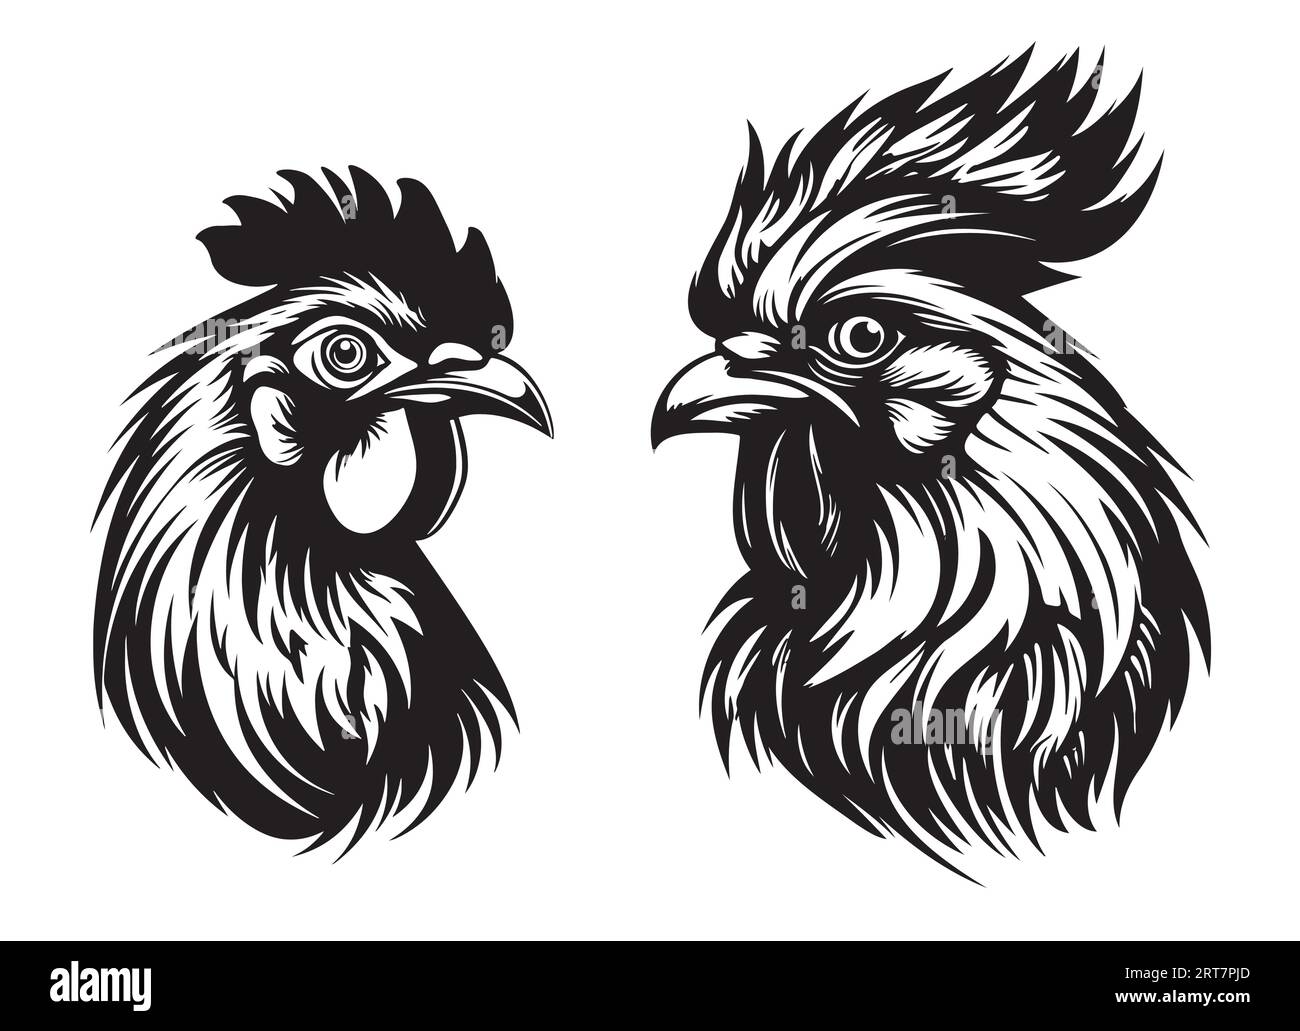 Disegno del logo della fattoria di gallo e gallina Vector disegnato a mano Illustrazione Vettoriale